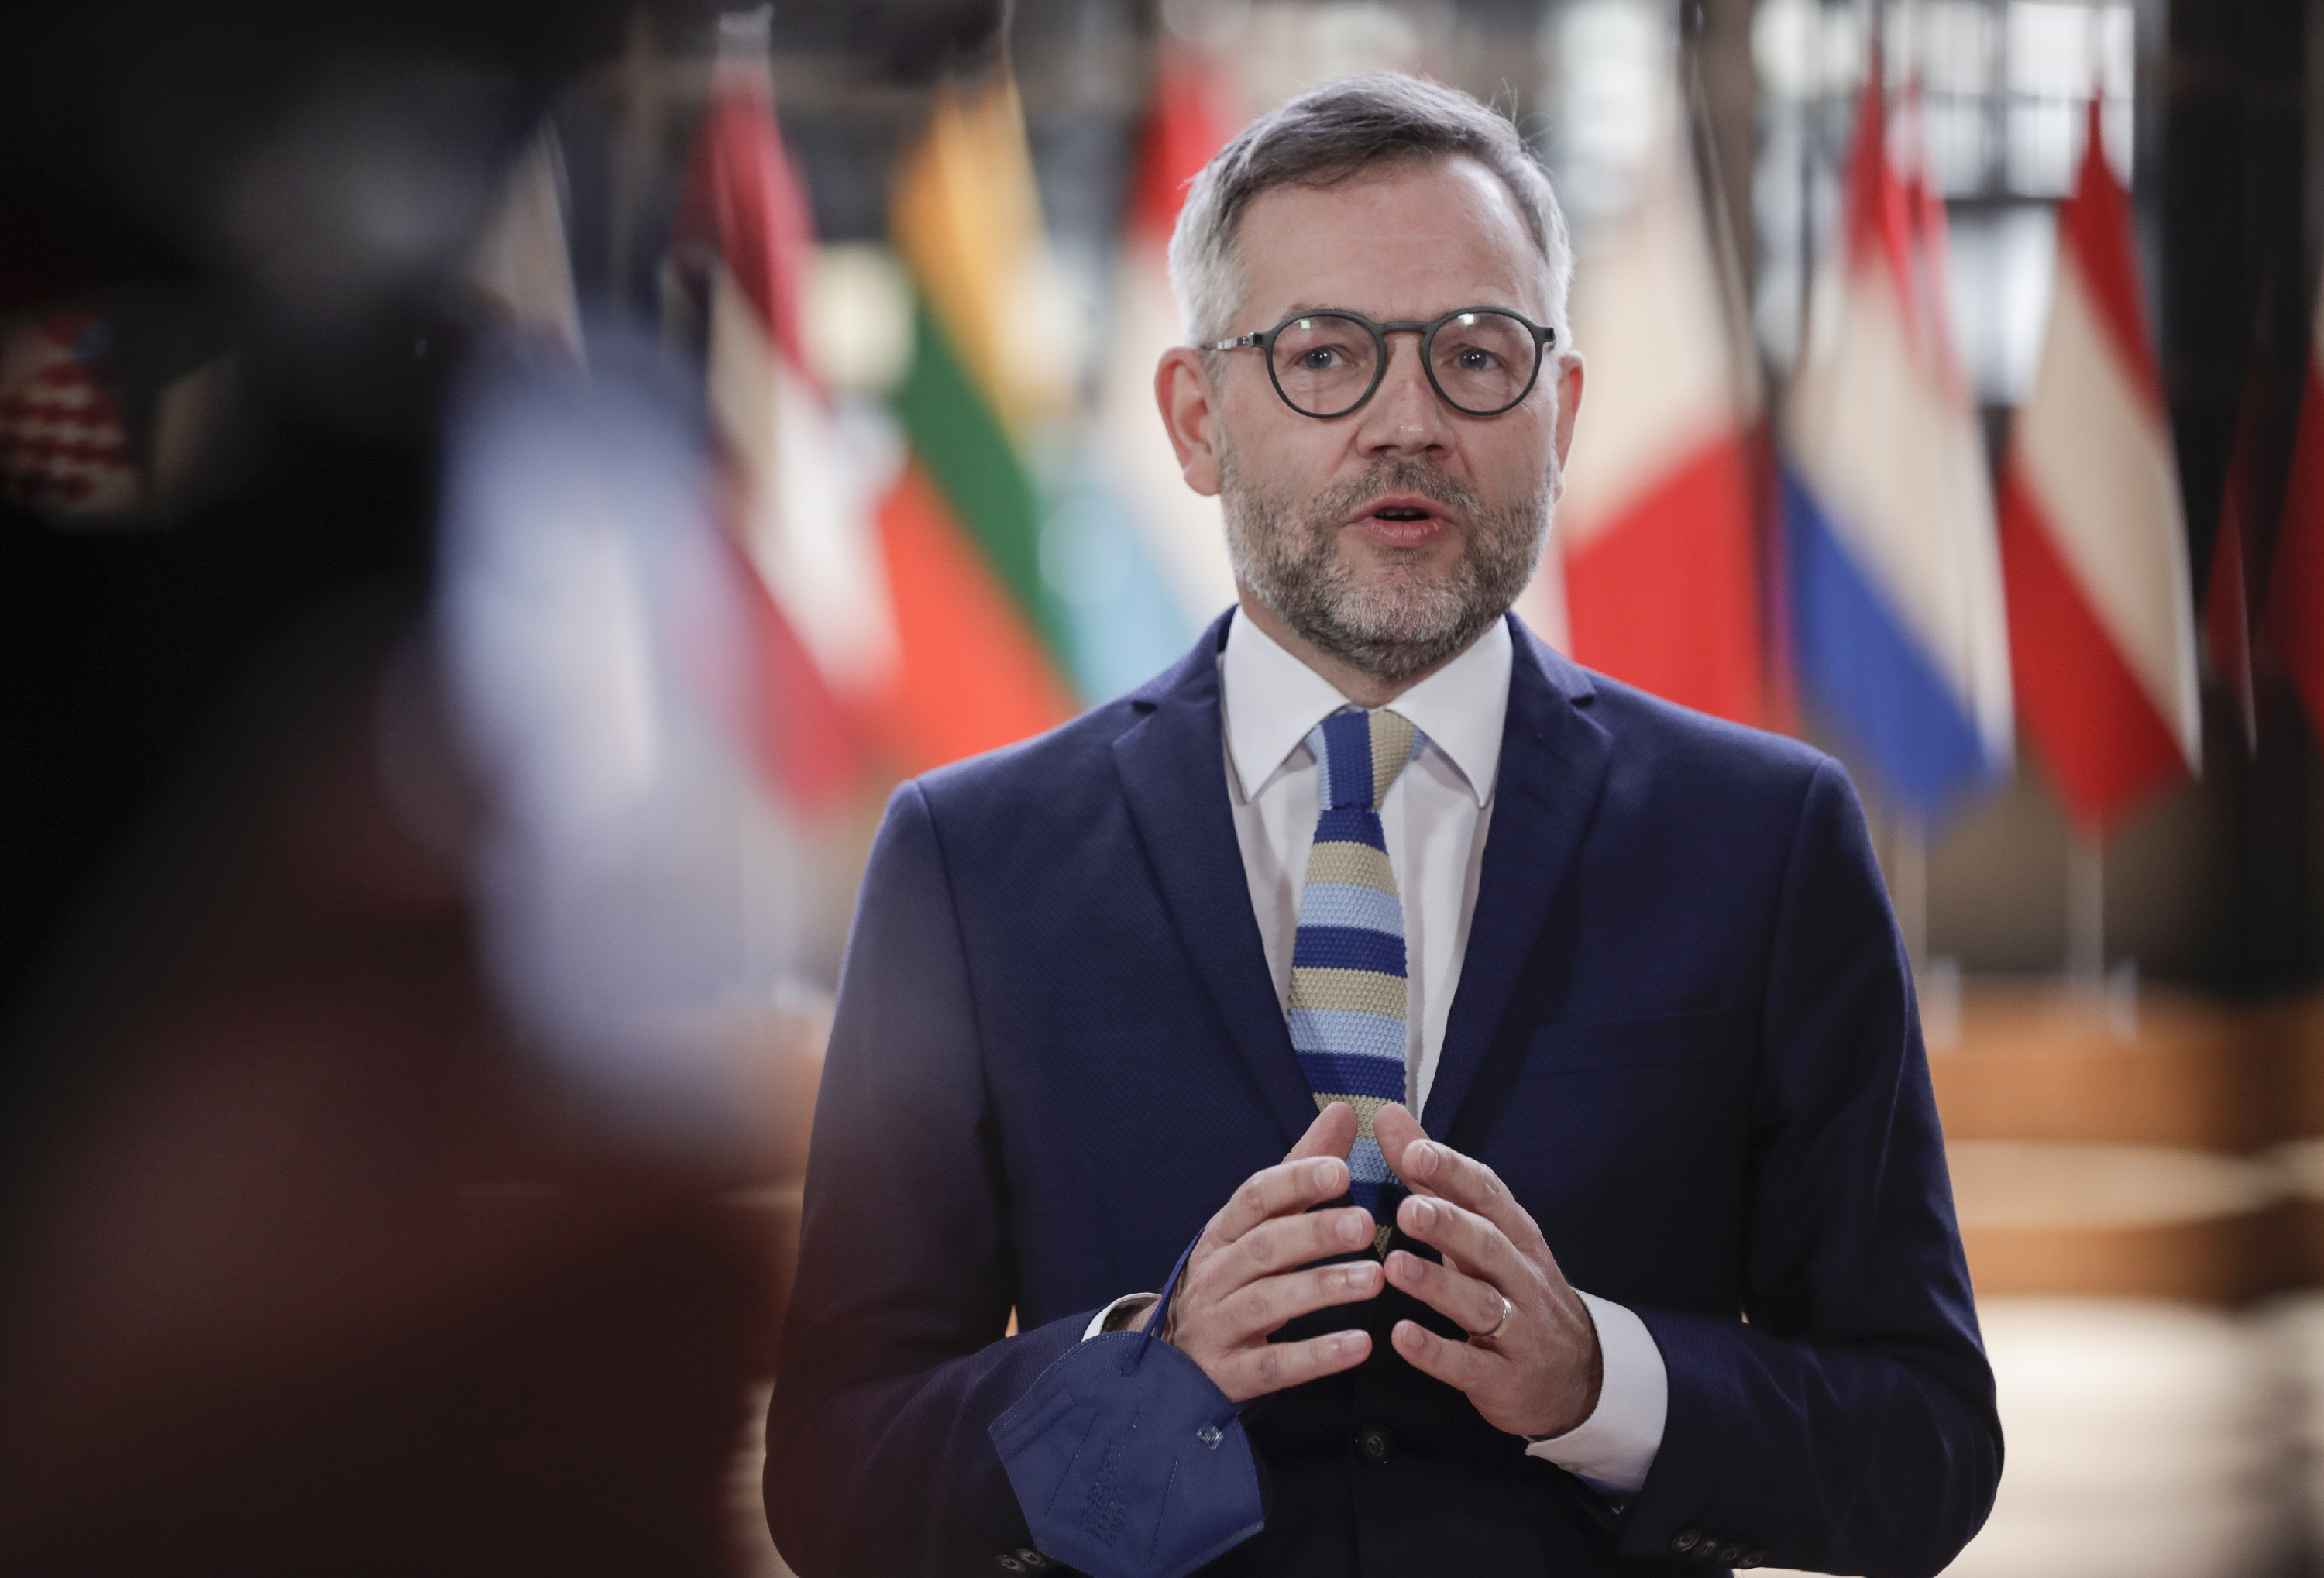 Német külügyi államminiszter: A magyar parlament súlyosan diszkriminálja az LMBTIQ embereket